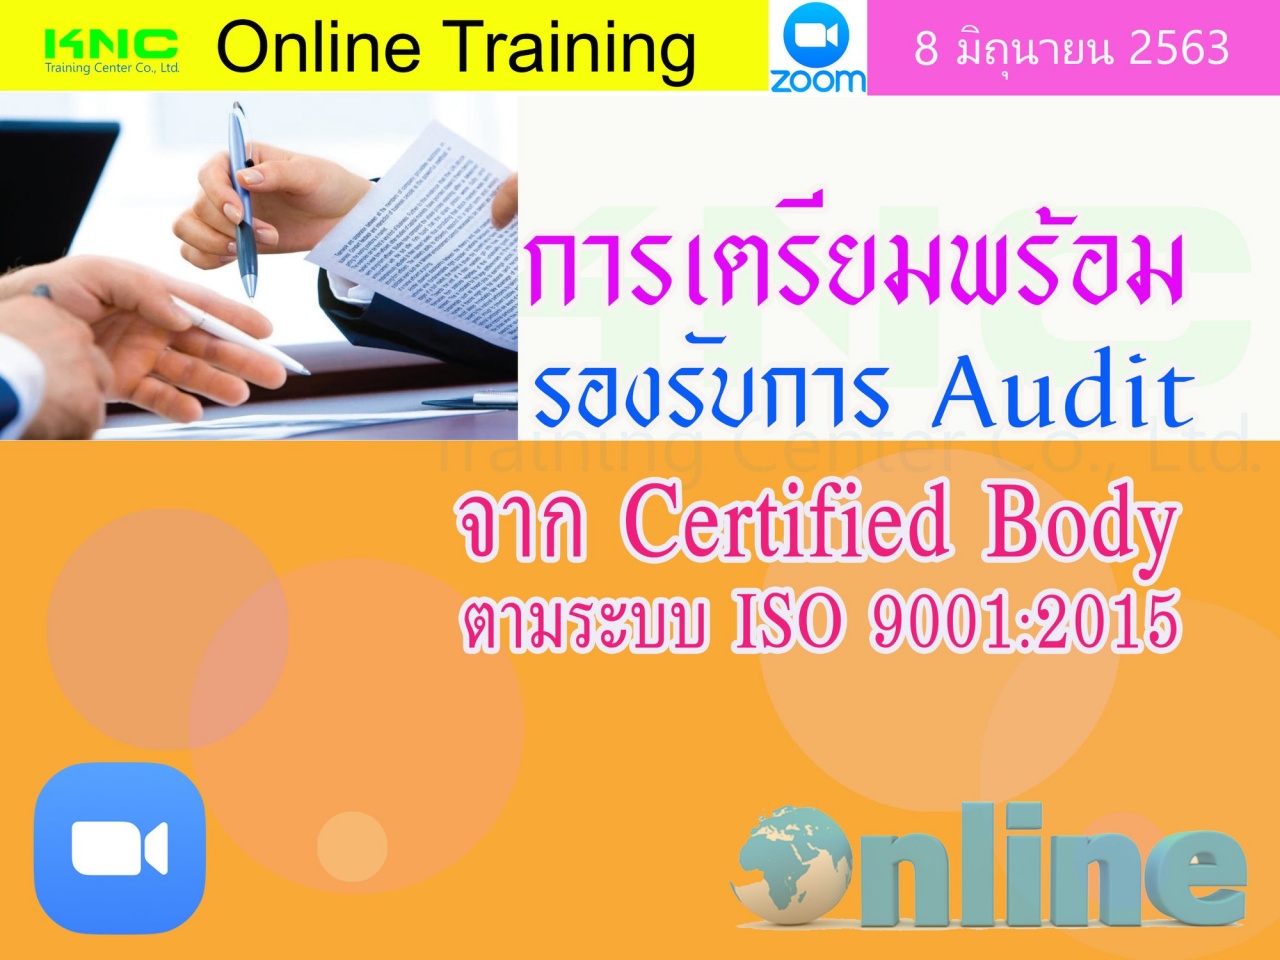 สัมมนา Online : การเตรียมพร้อมรองรับการ Audit จาก Certified Body ตามระบบ ISO 9001:2015